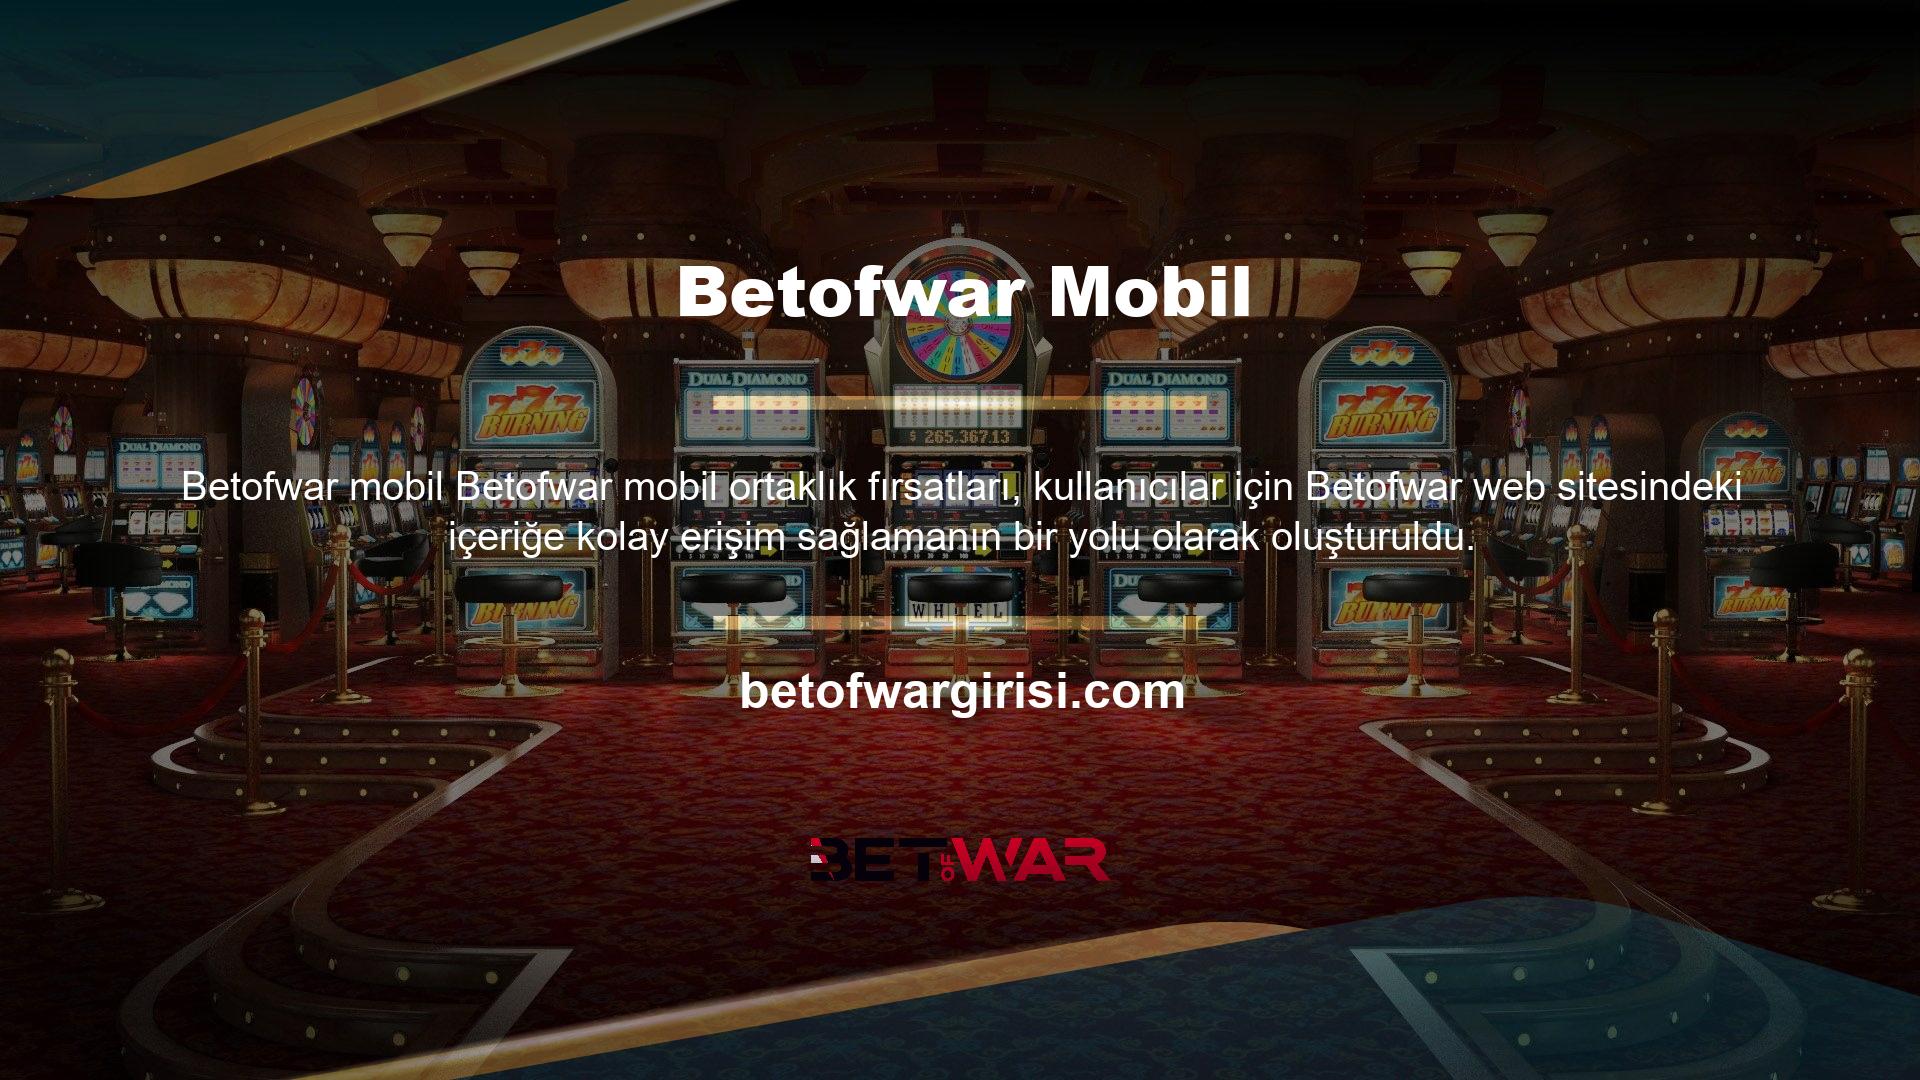 Temel olarak Betofwar Mobile uygulaması, şirketin web sitesinin tüm işlevlerine tam erişim sağlar